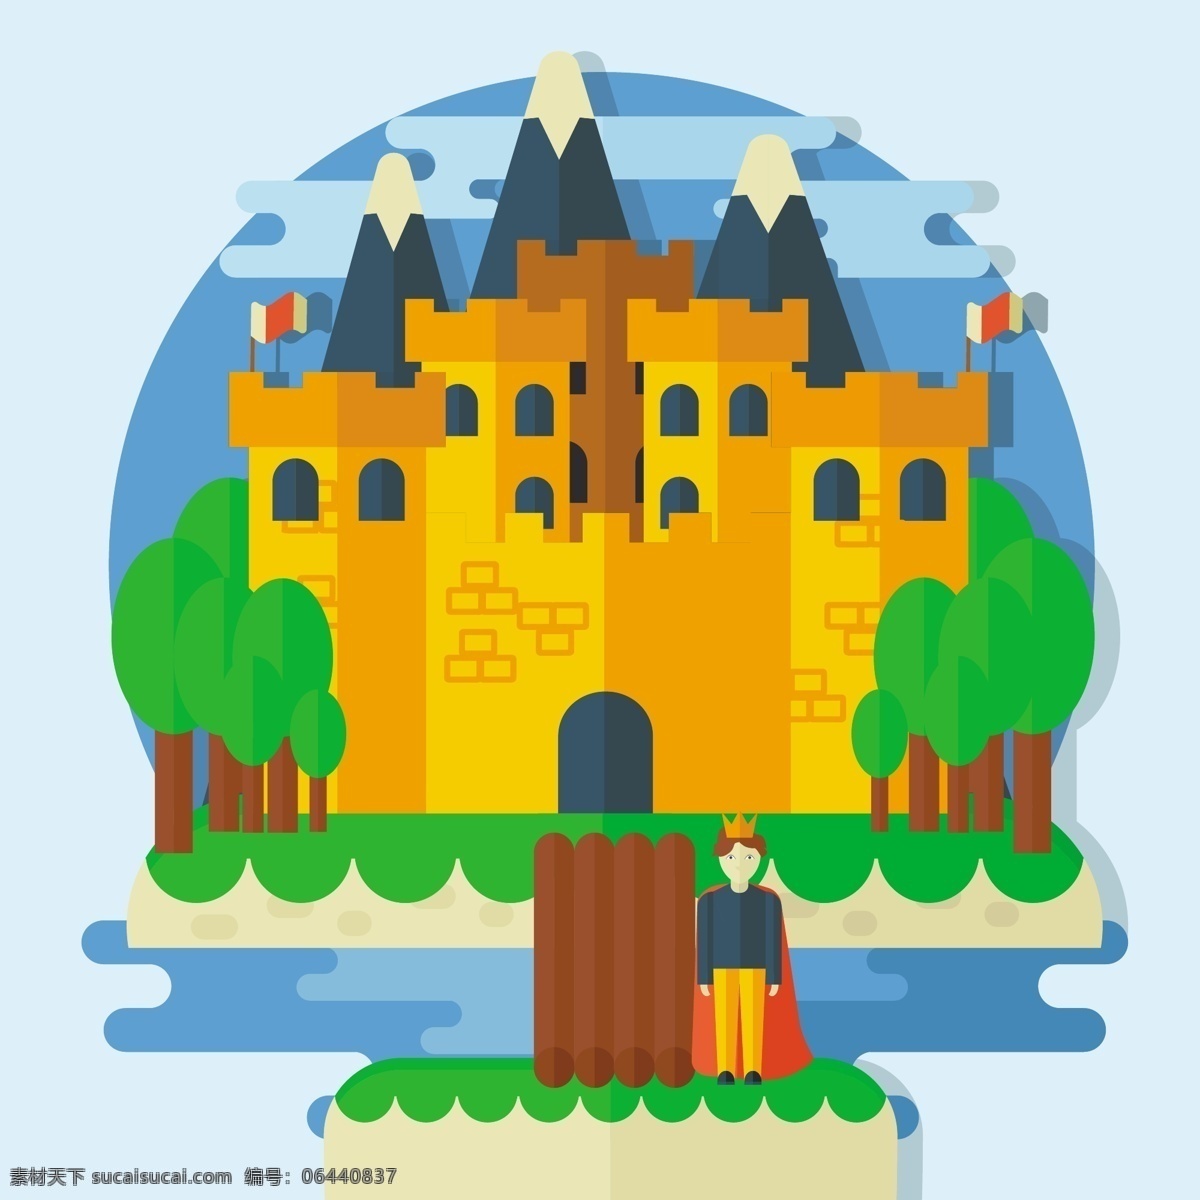 中世纪 城堡 王子 背景 美丽 性格 花园 皇家 创意 平面设计 魔术 童话 插图 浪漫 骑士 幻想 宫殿 想象力 王国 想象